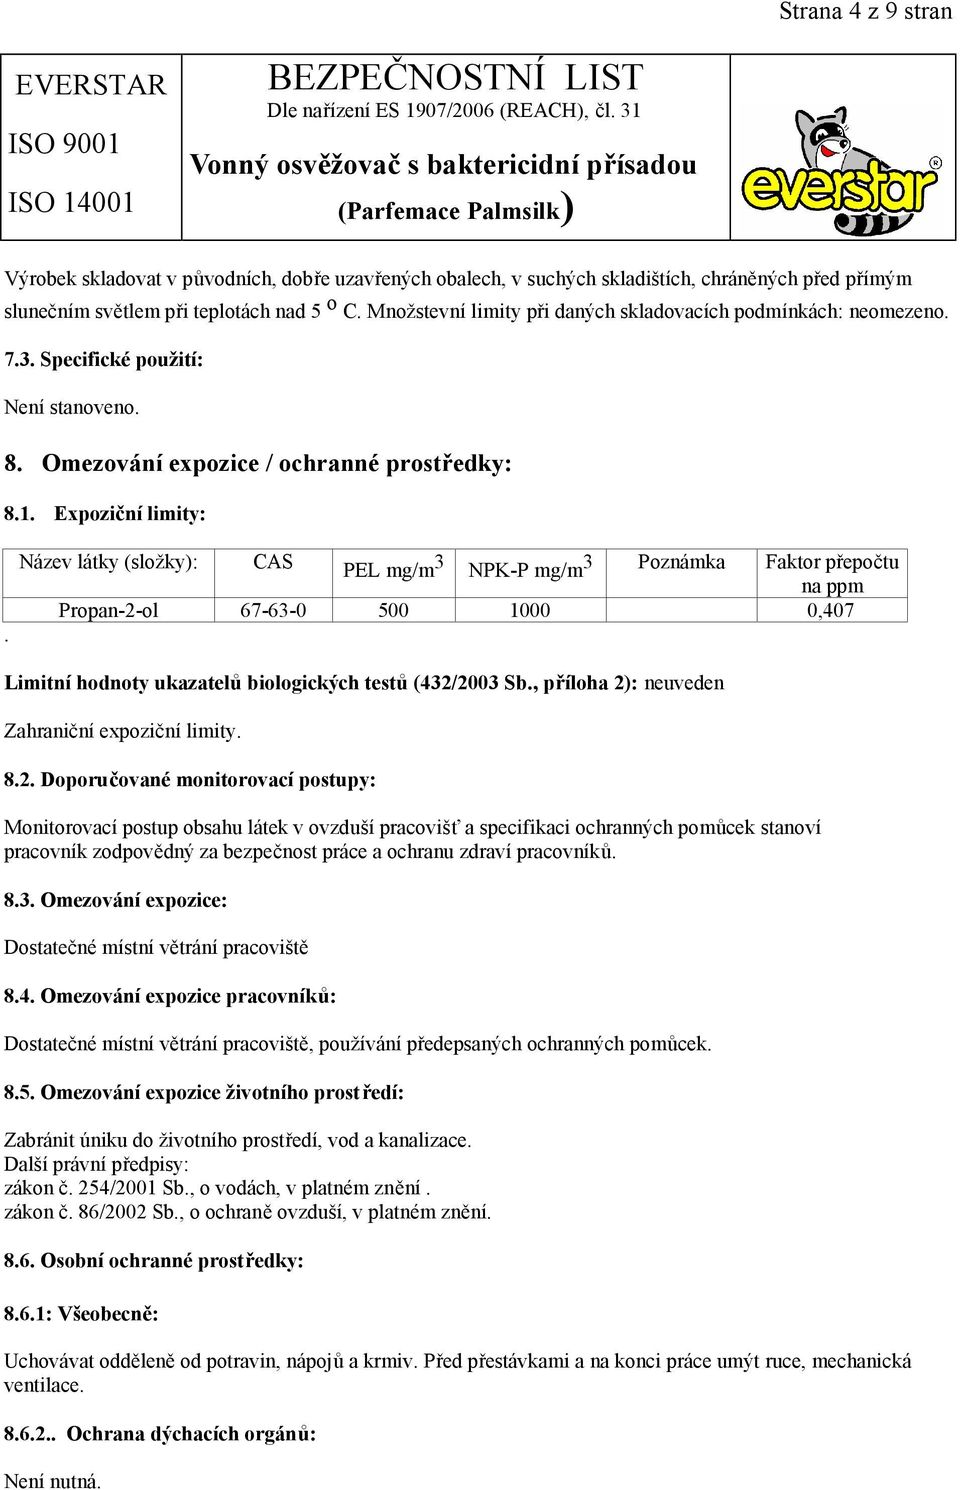 Název látky (složky): CAS PEL mg/m 3 NPK-P mg/m 3 Poznámka Faktor přepočtu na ppm Propan-2-ol 67-63-0 500 1000 0,407 Limitní hodnoty ukazatelů biologických testů (432/2003 Sb.